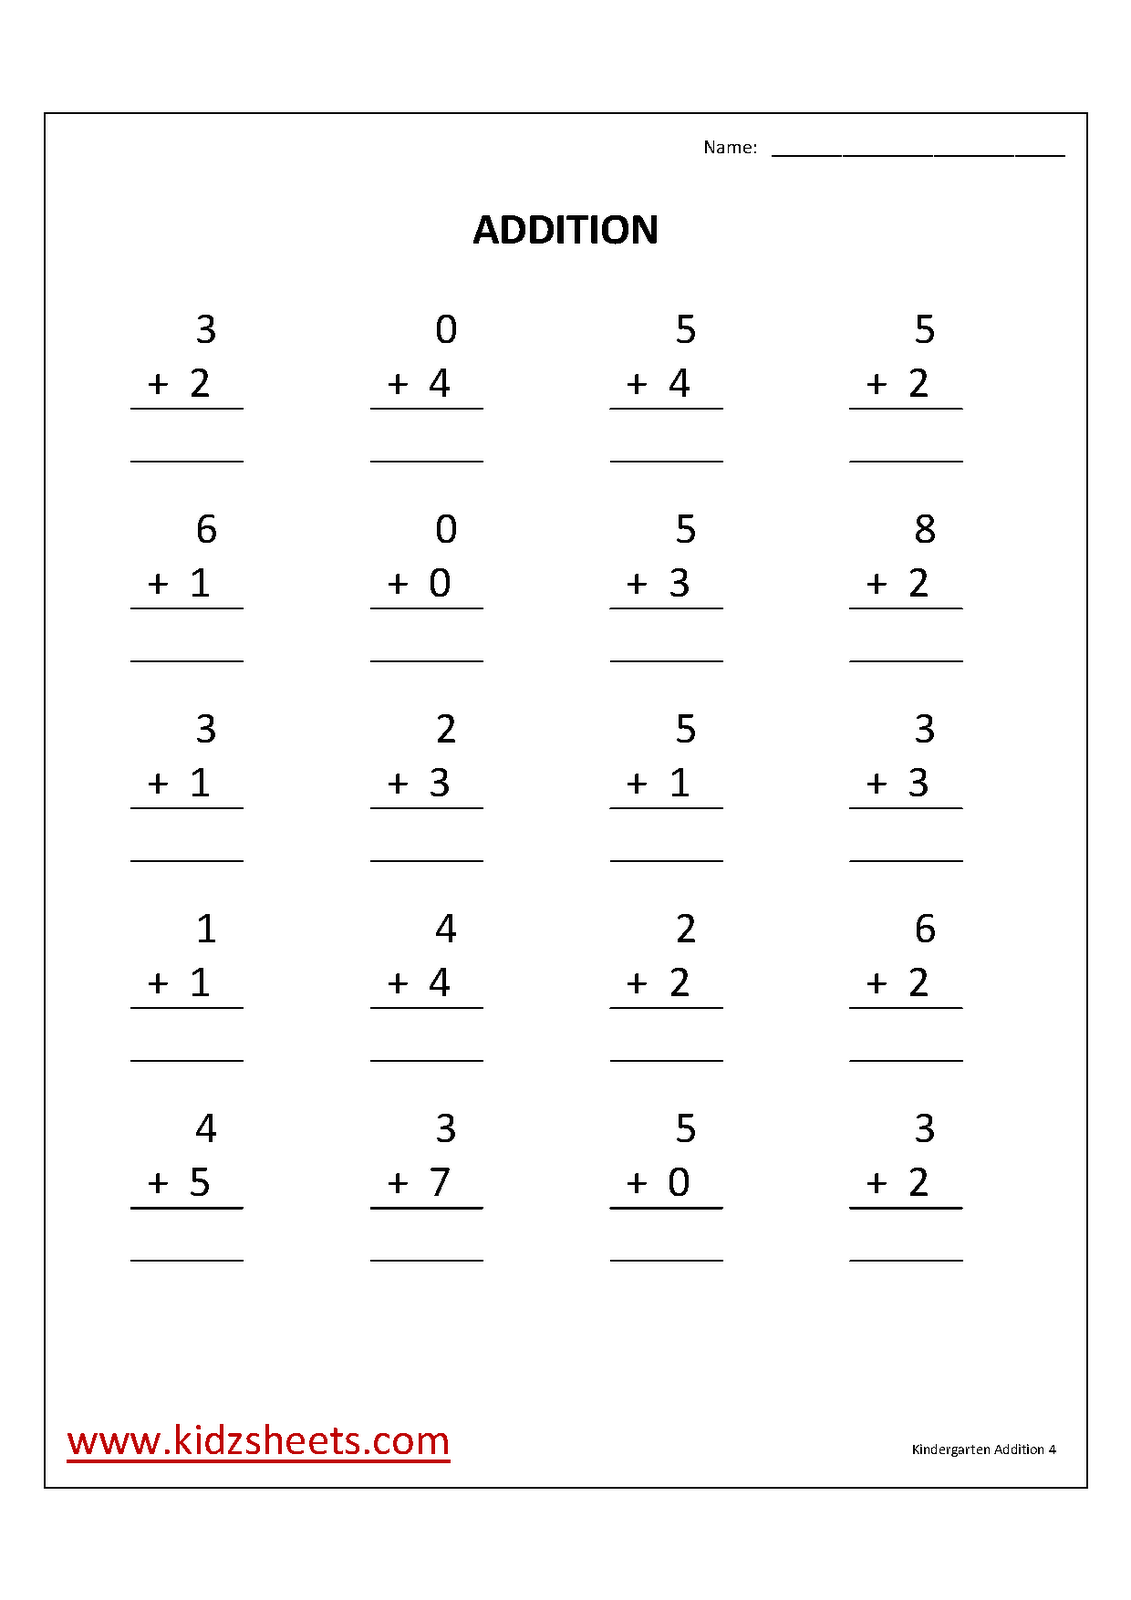 printable-kindergarten-worksheets-kindergarten